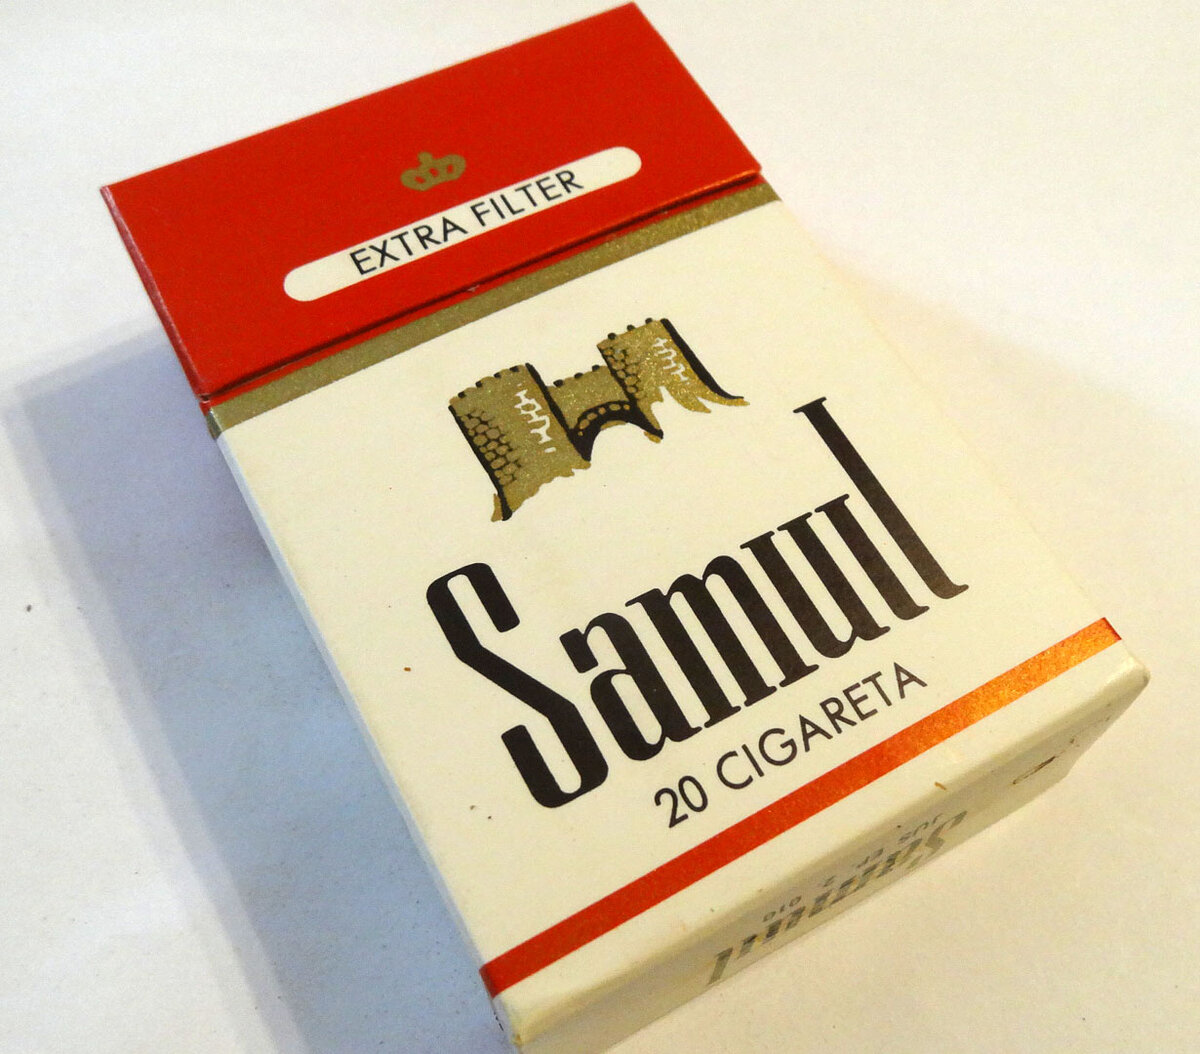 Ронхилл югославские сигареты